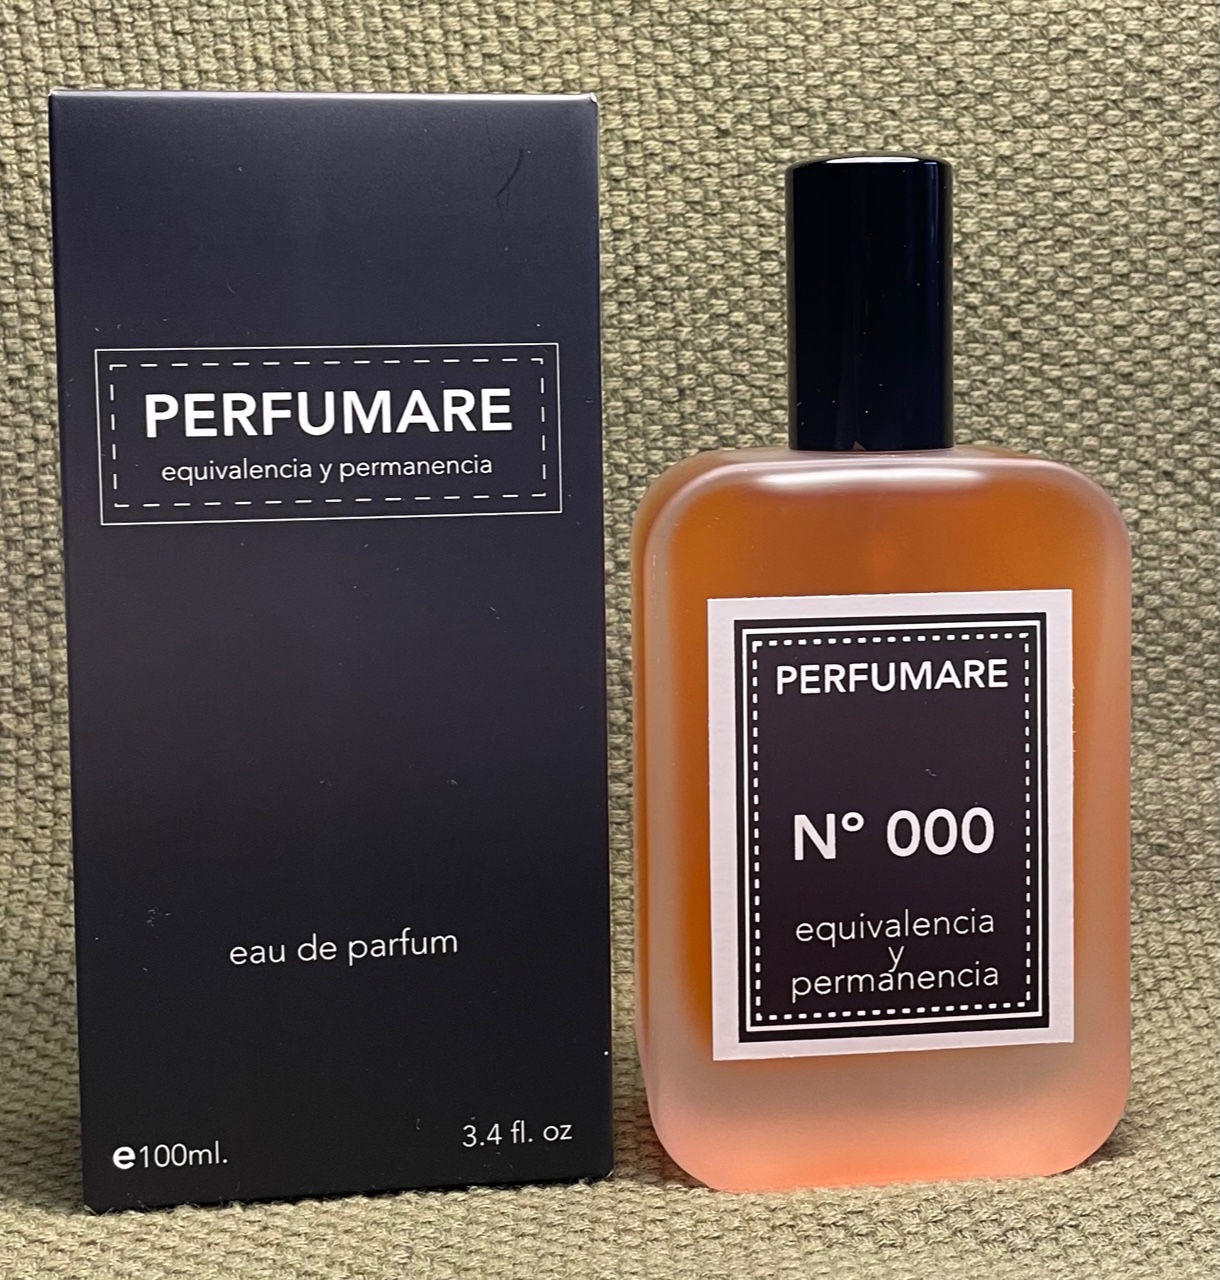 L'IMMENSITÉ, LOUIS VUITTON archivos - Perfumare